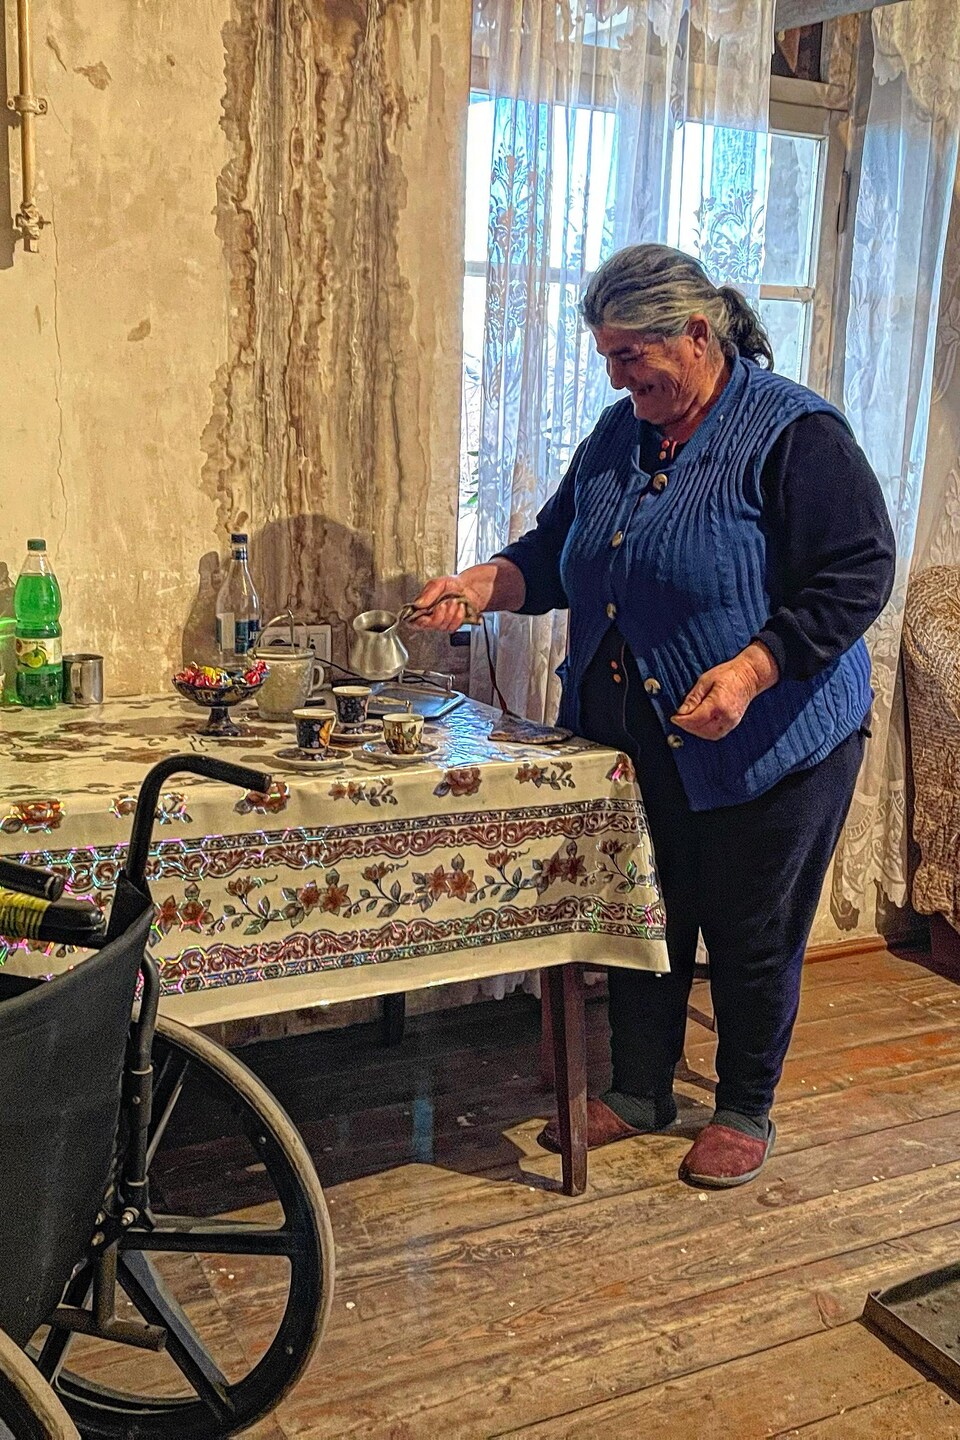 Une femme sert le café dans des tasses sur une table.